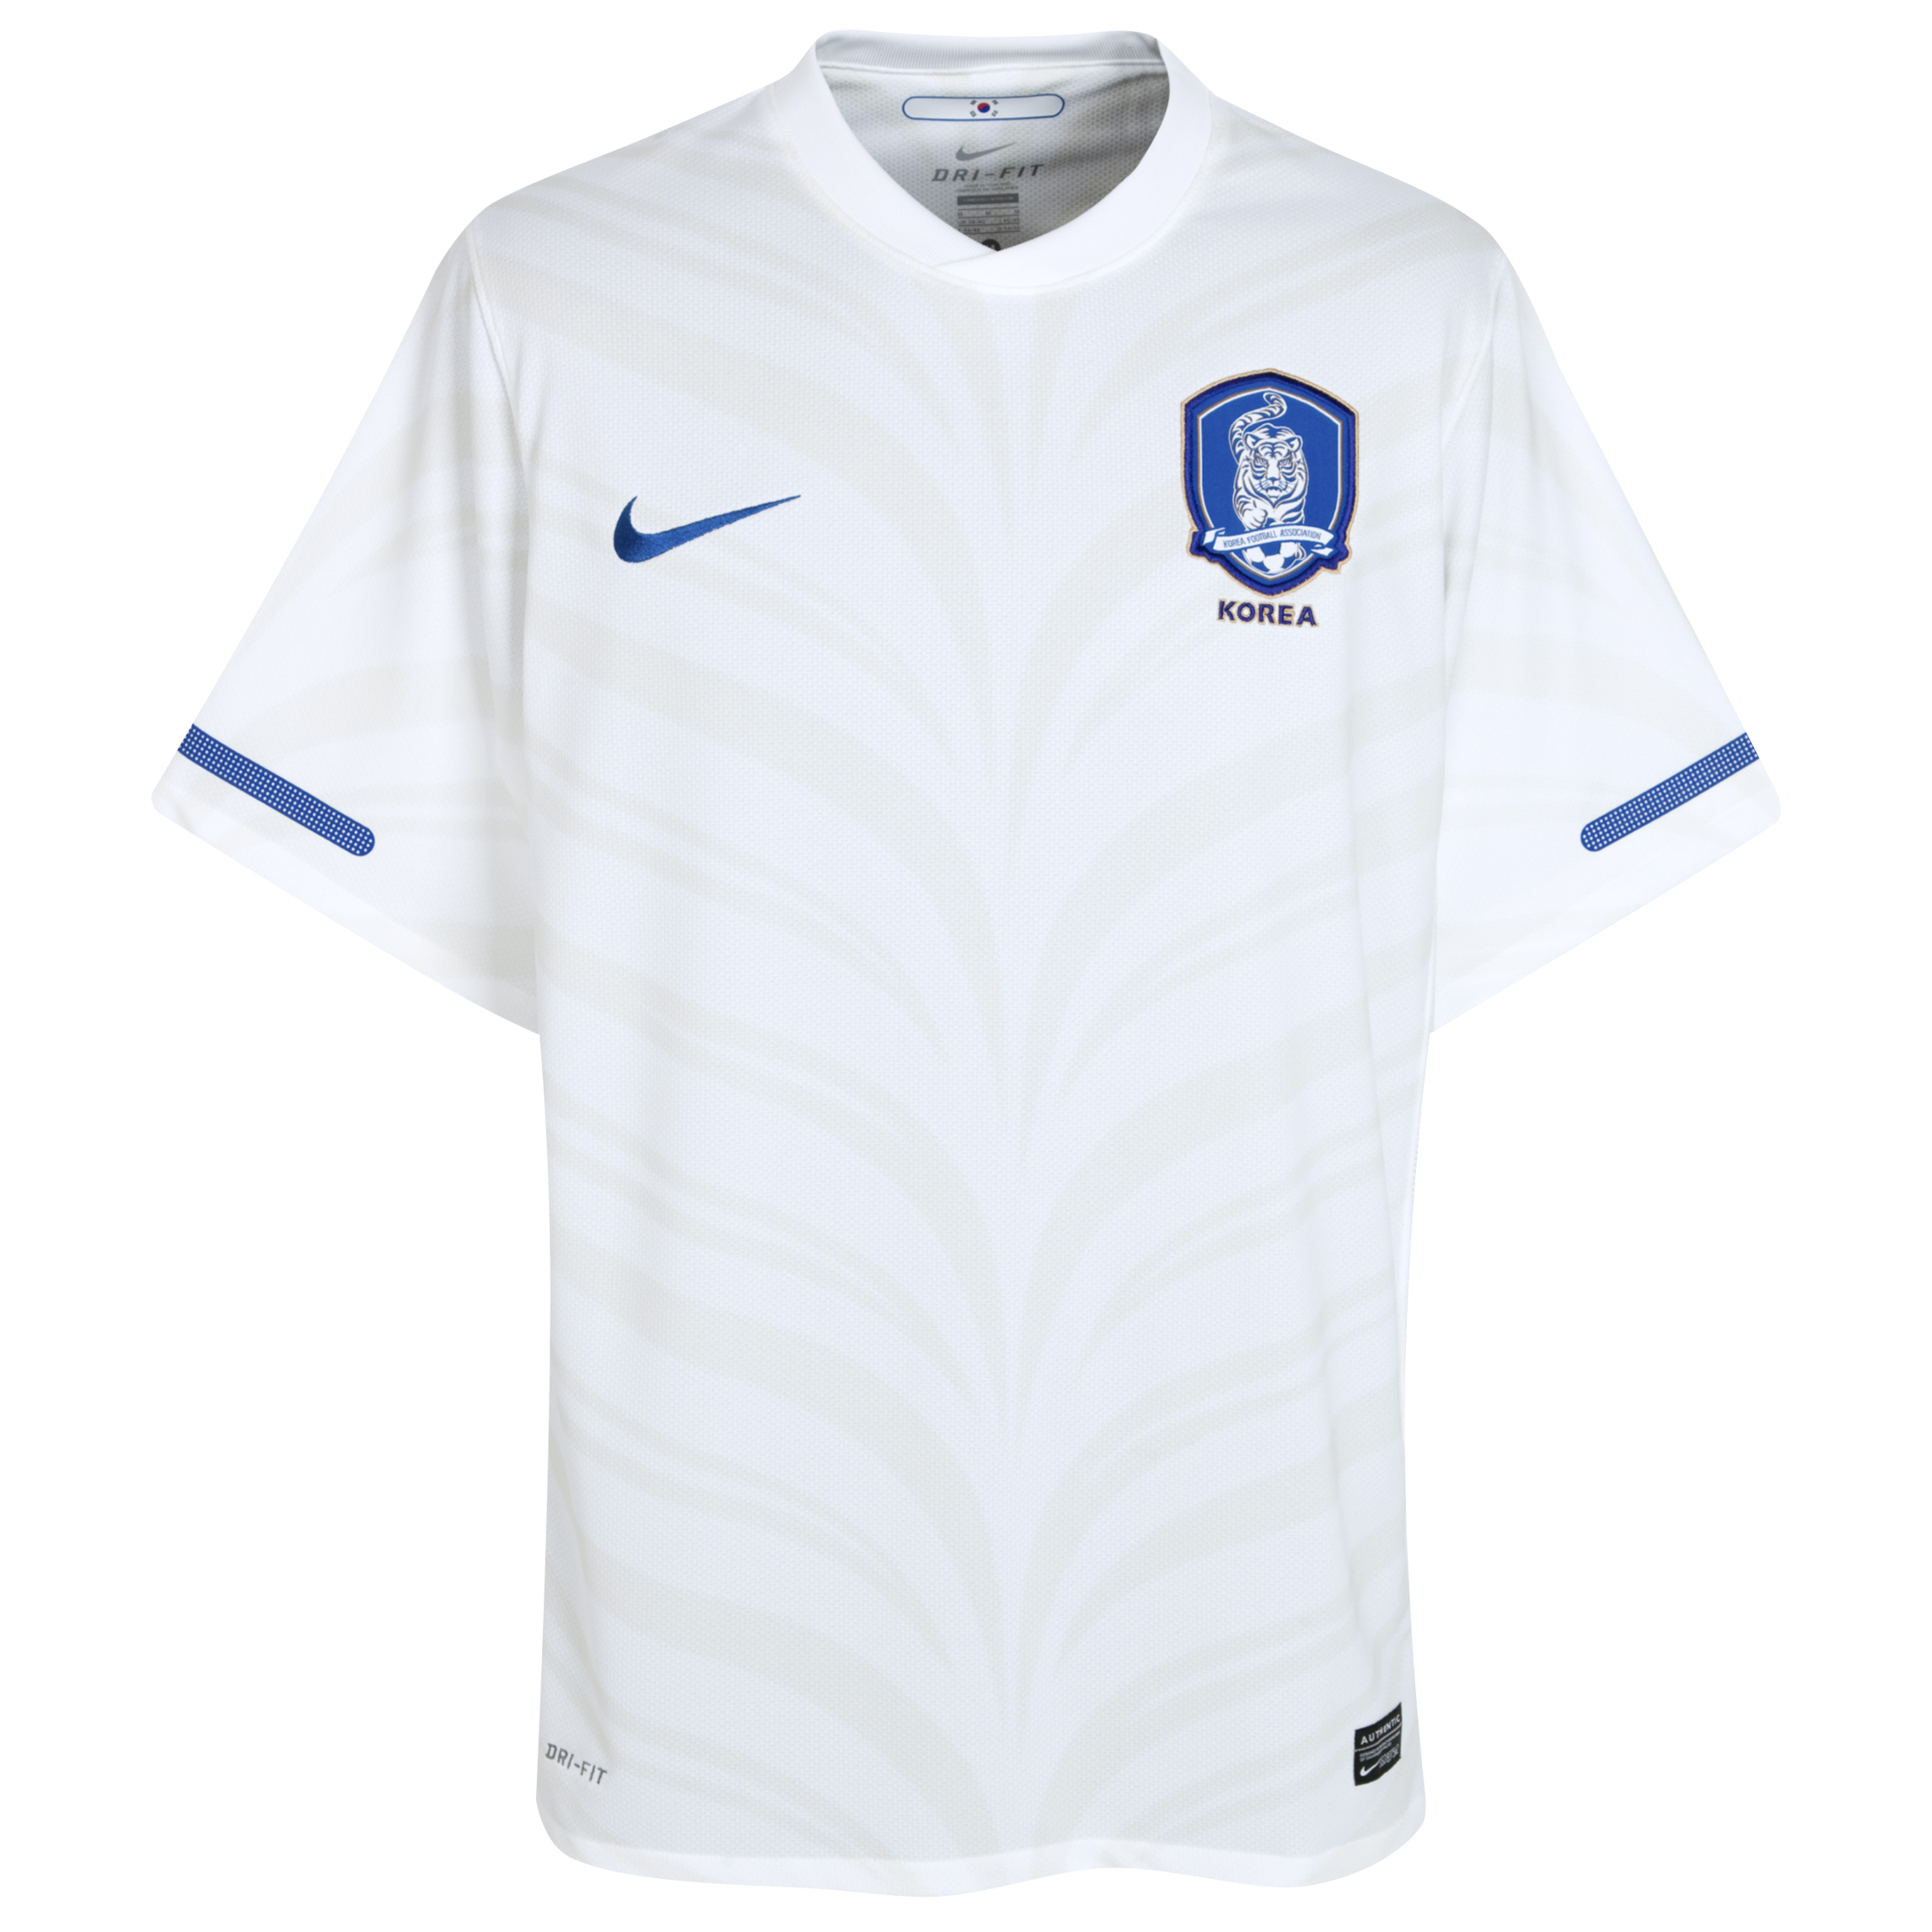 الملابس النهائيه لكأس العالم (2010) Kb-69619